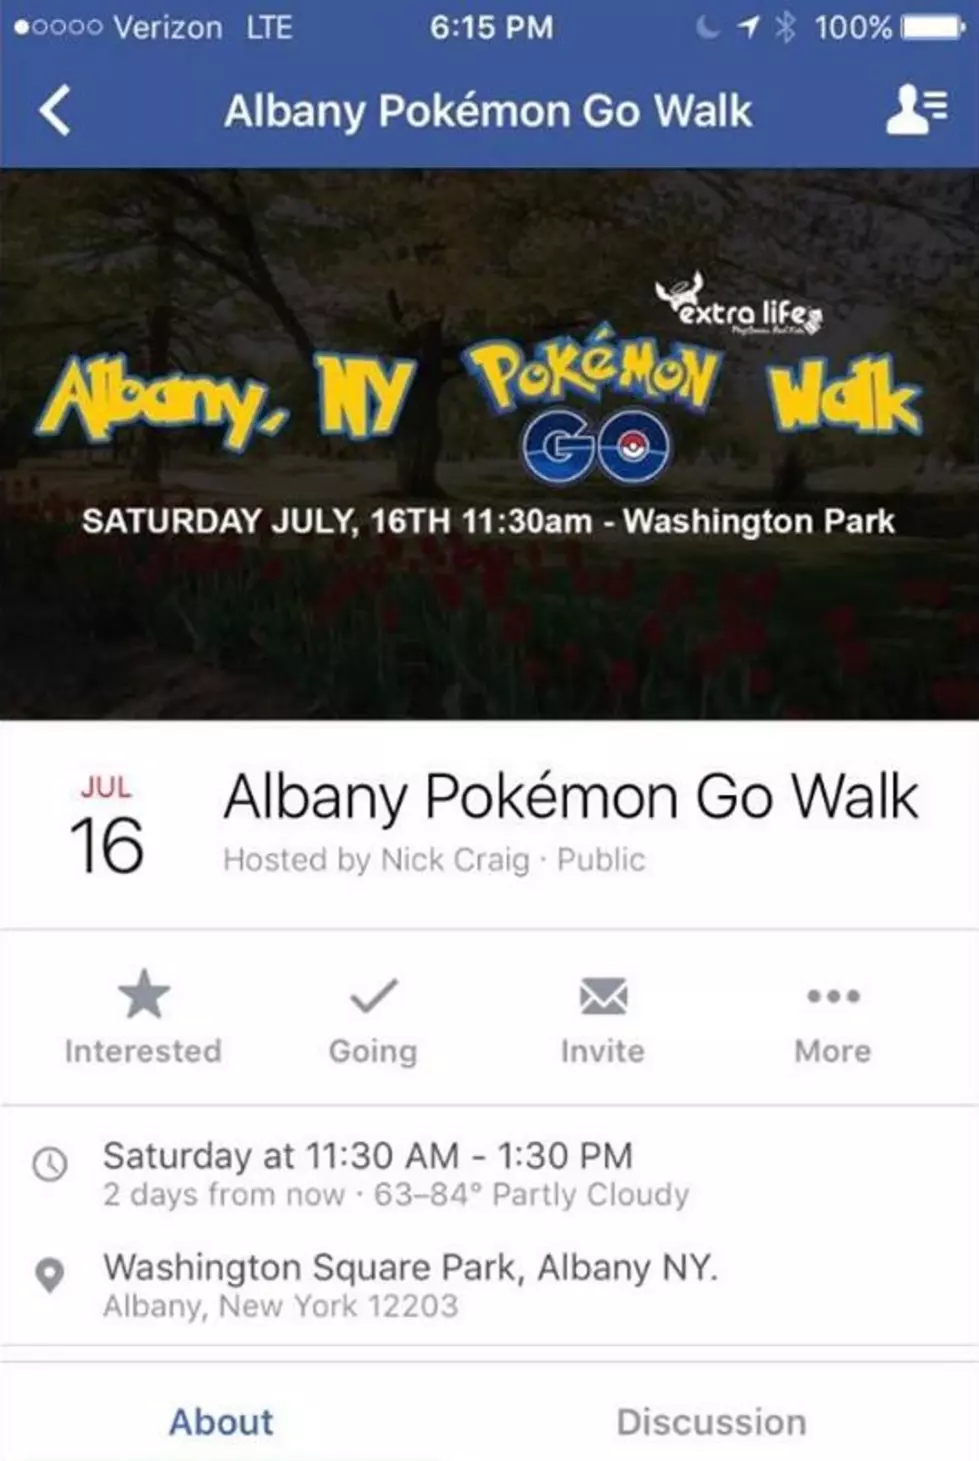 Pokémon Go “Walk” in Albany This Saturday